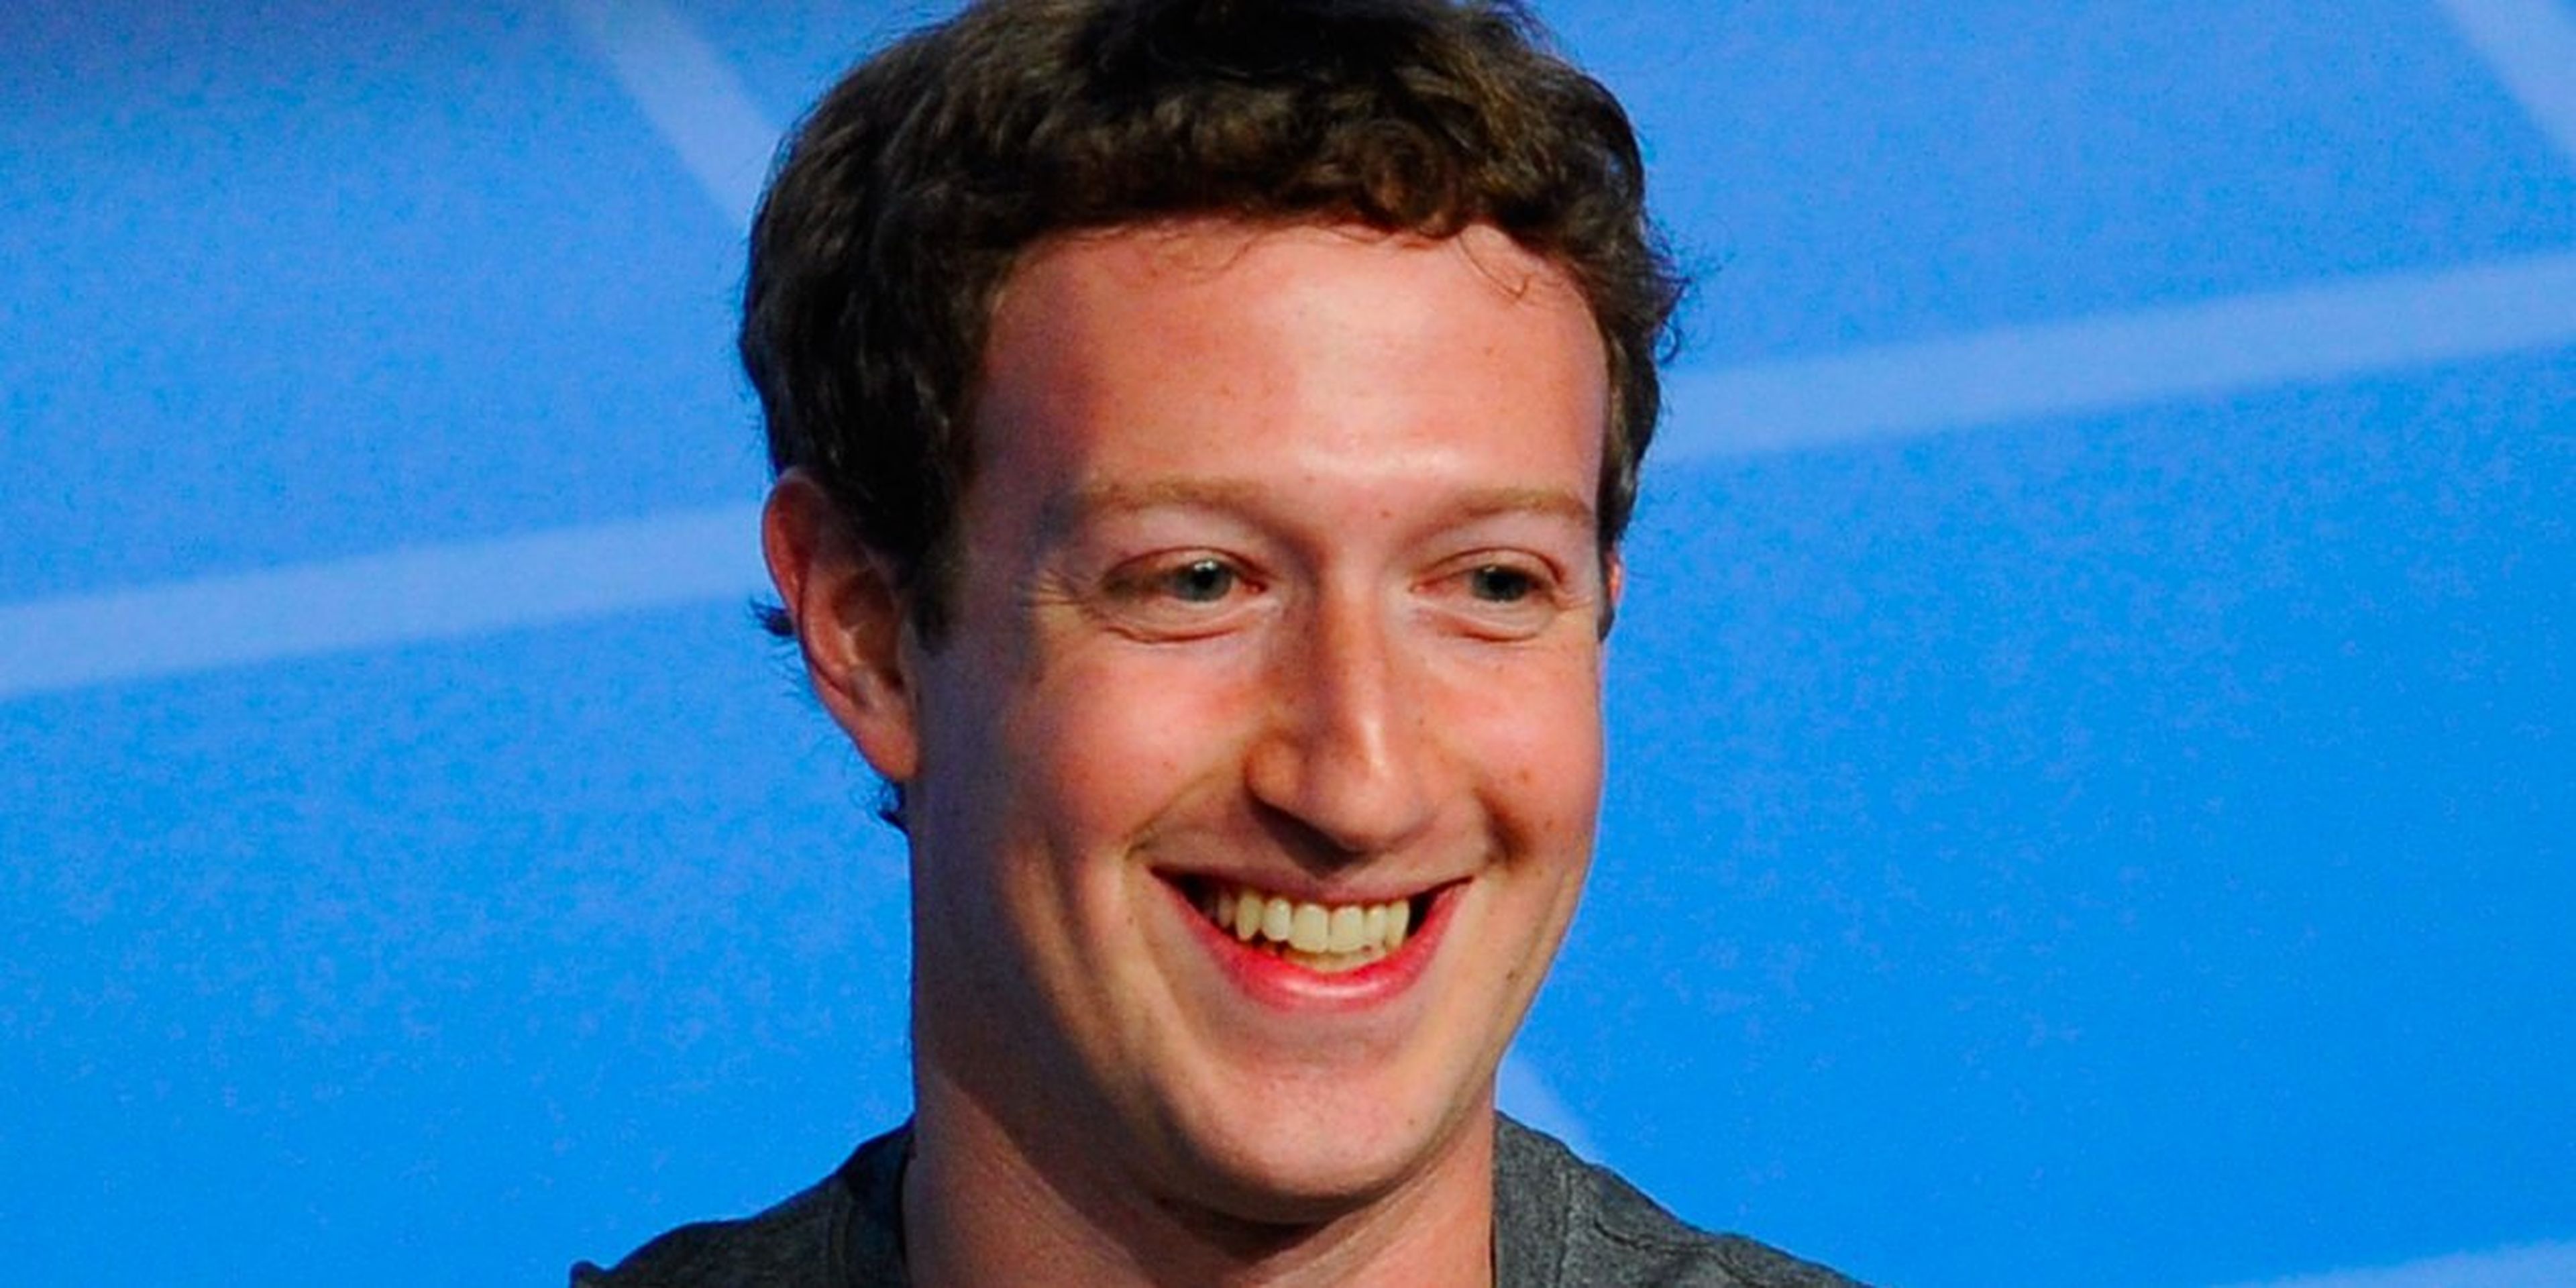 Mark Zuckerberg creador de Facebook